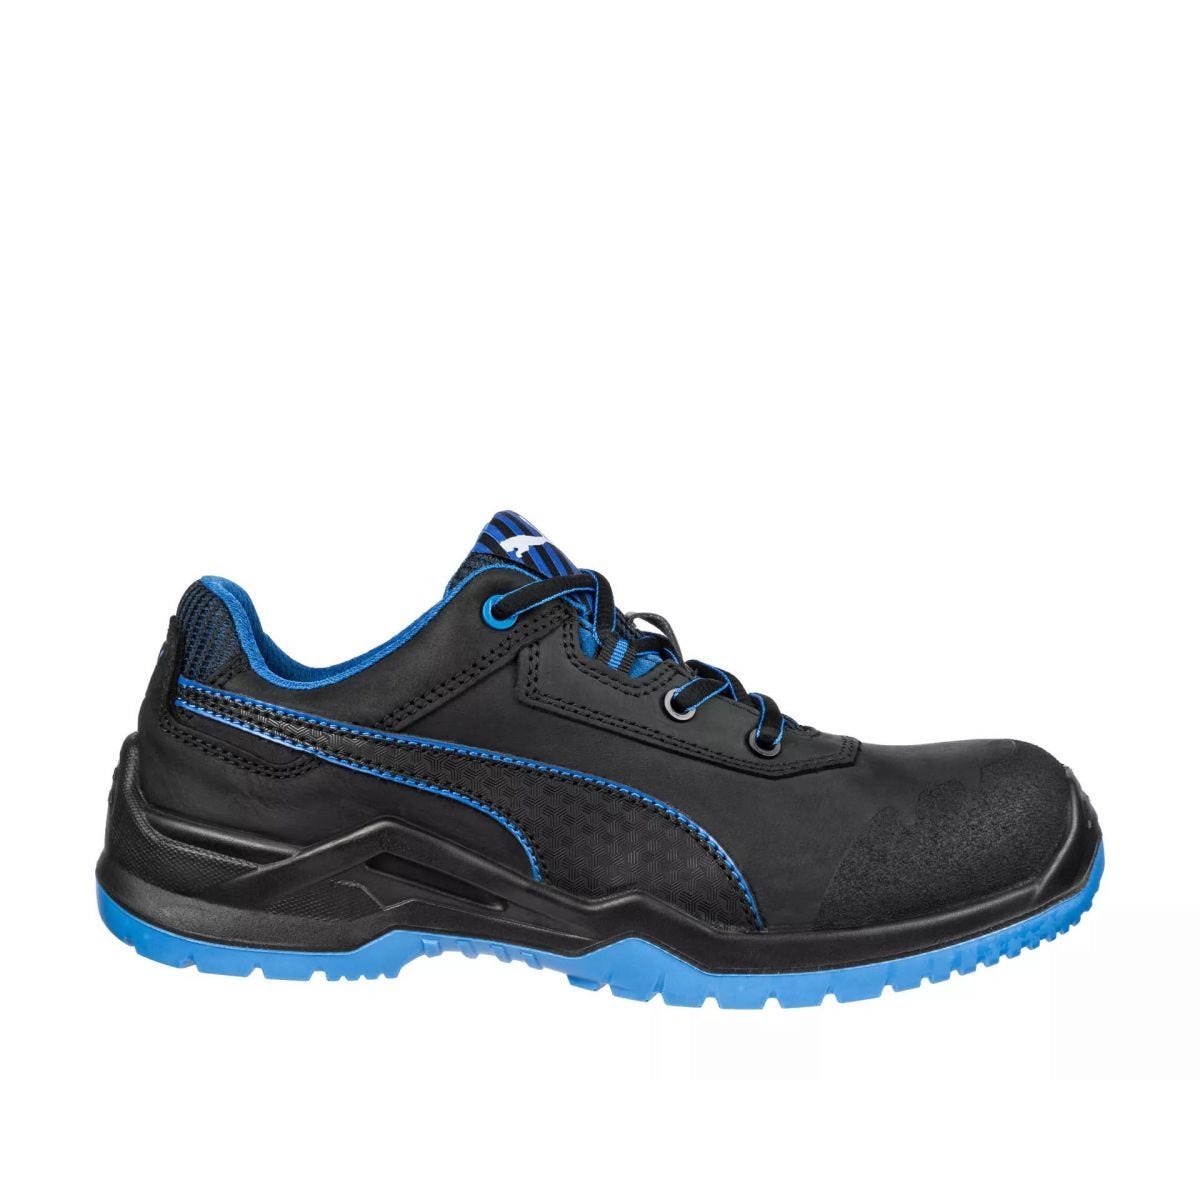 Chaussures de sécurité Argon RX low S3 ESD SRC bleu - Puma - Taille 43 0